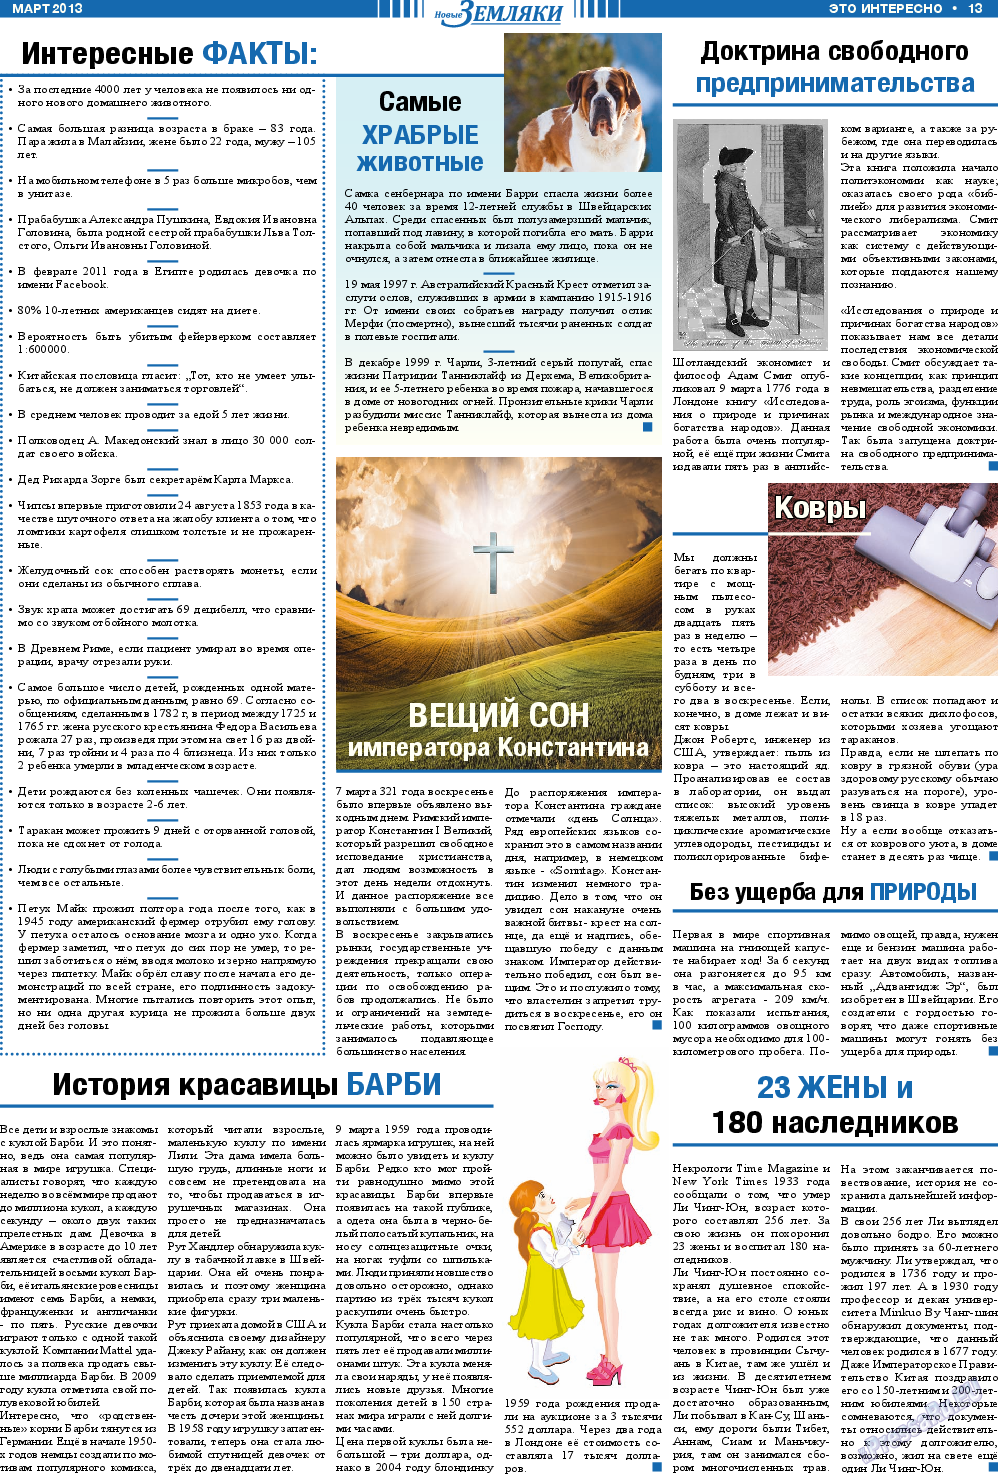 Новые Земляки, газета. 2013 №3 стр.13